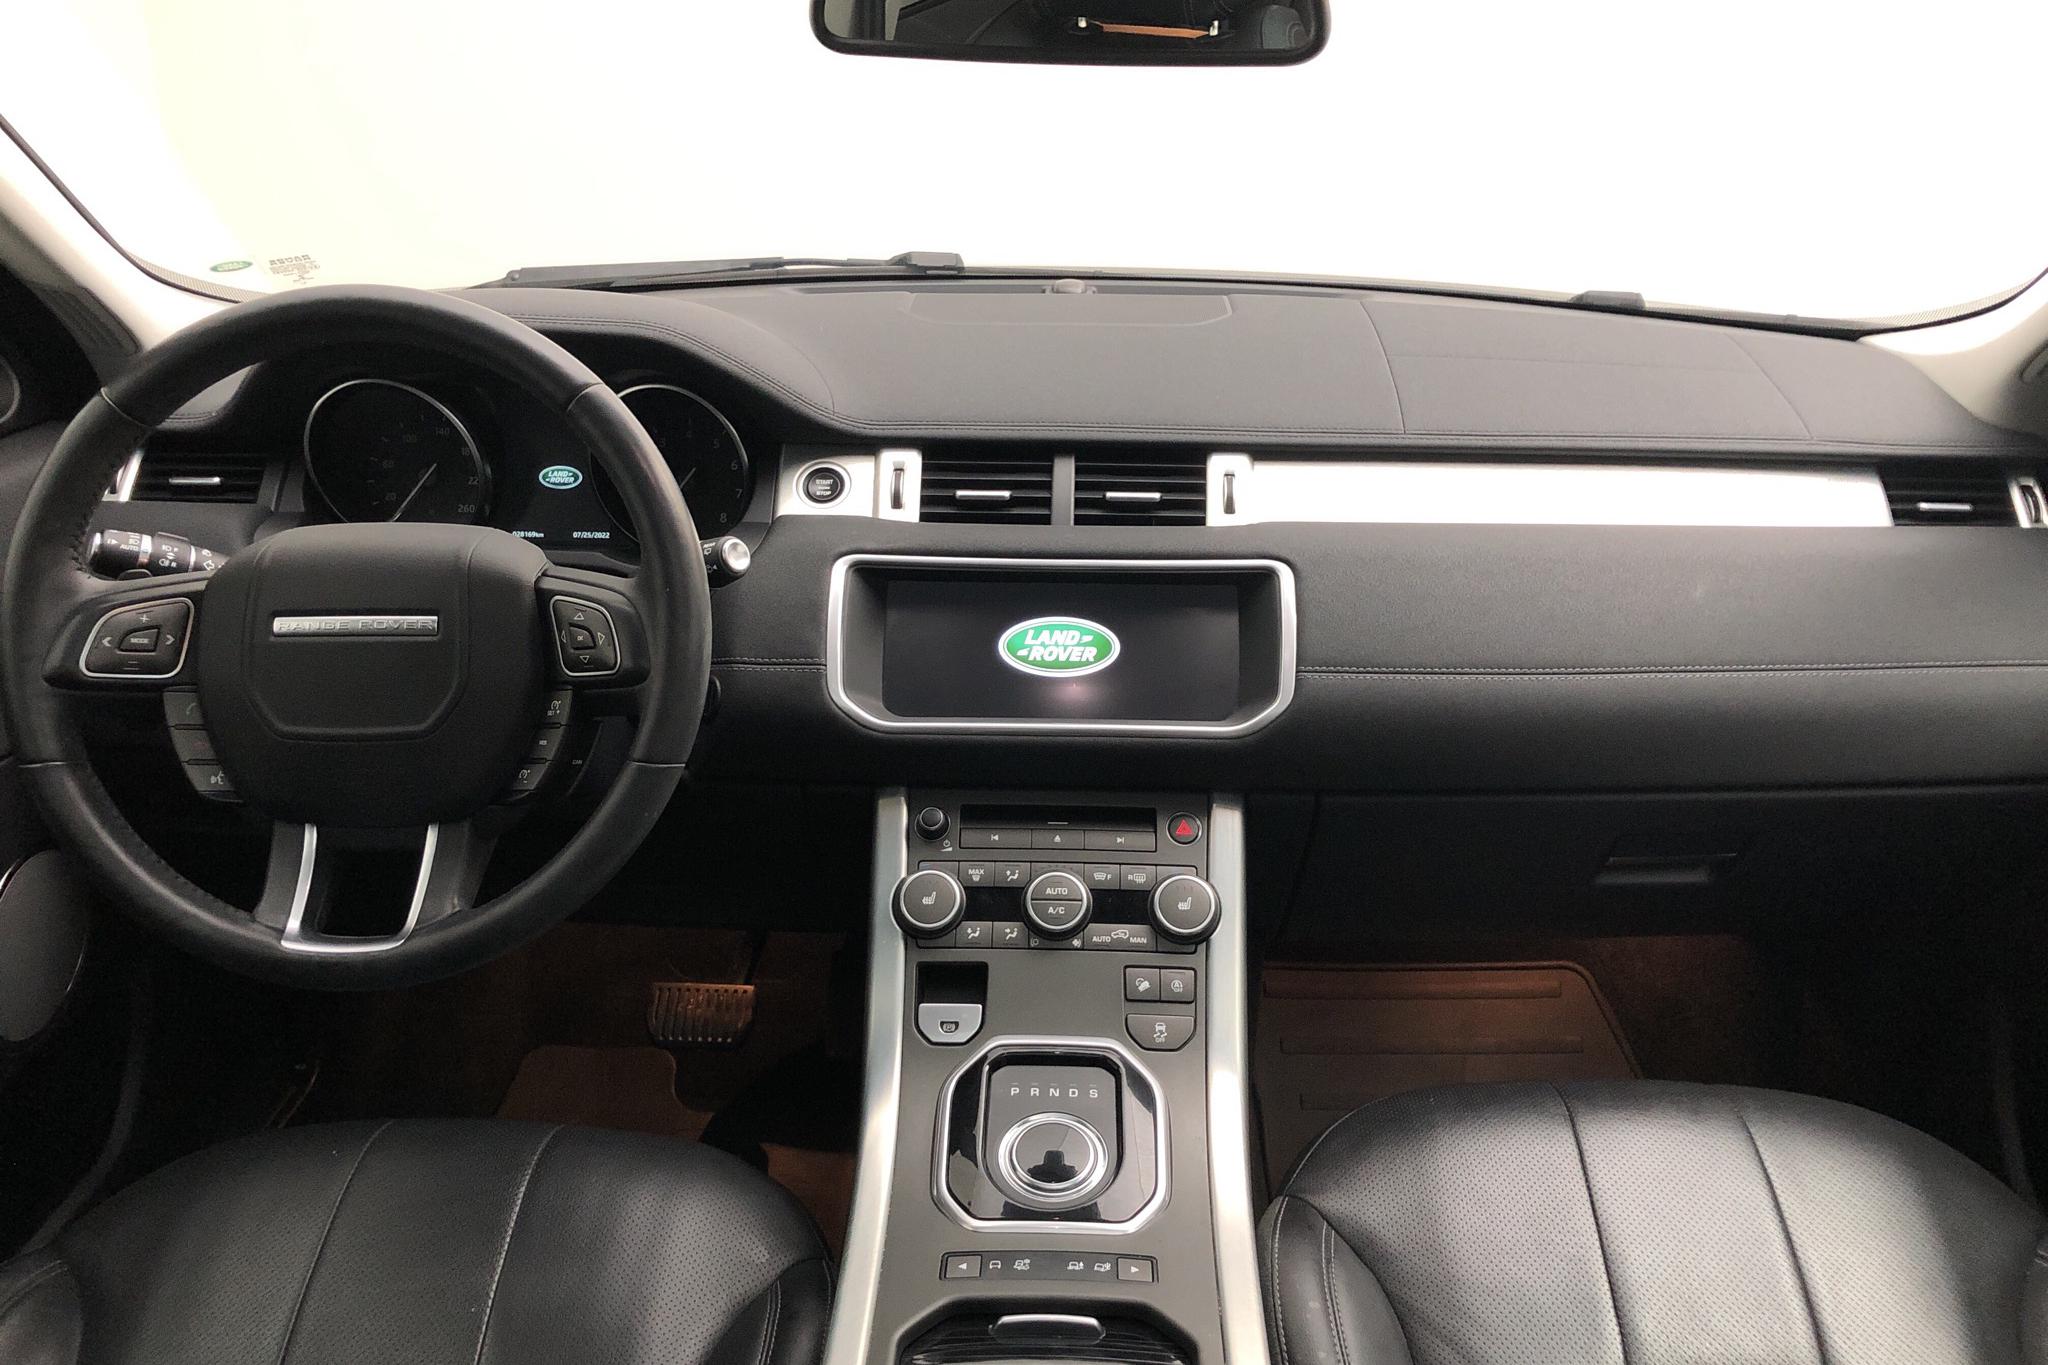 The interior design of the Range Rover Evoque 2.0 Si4